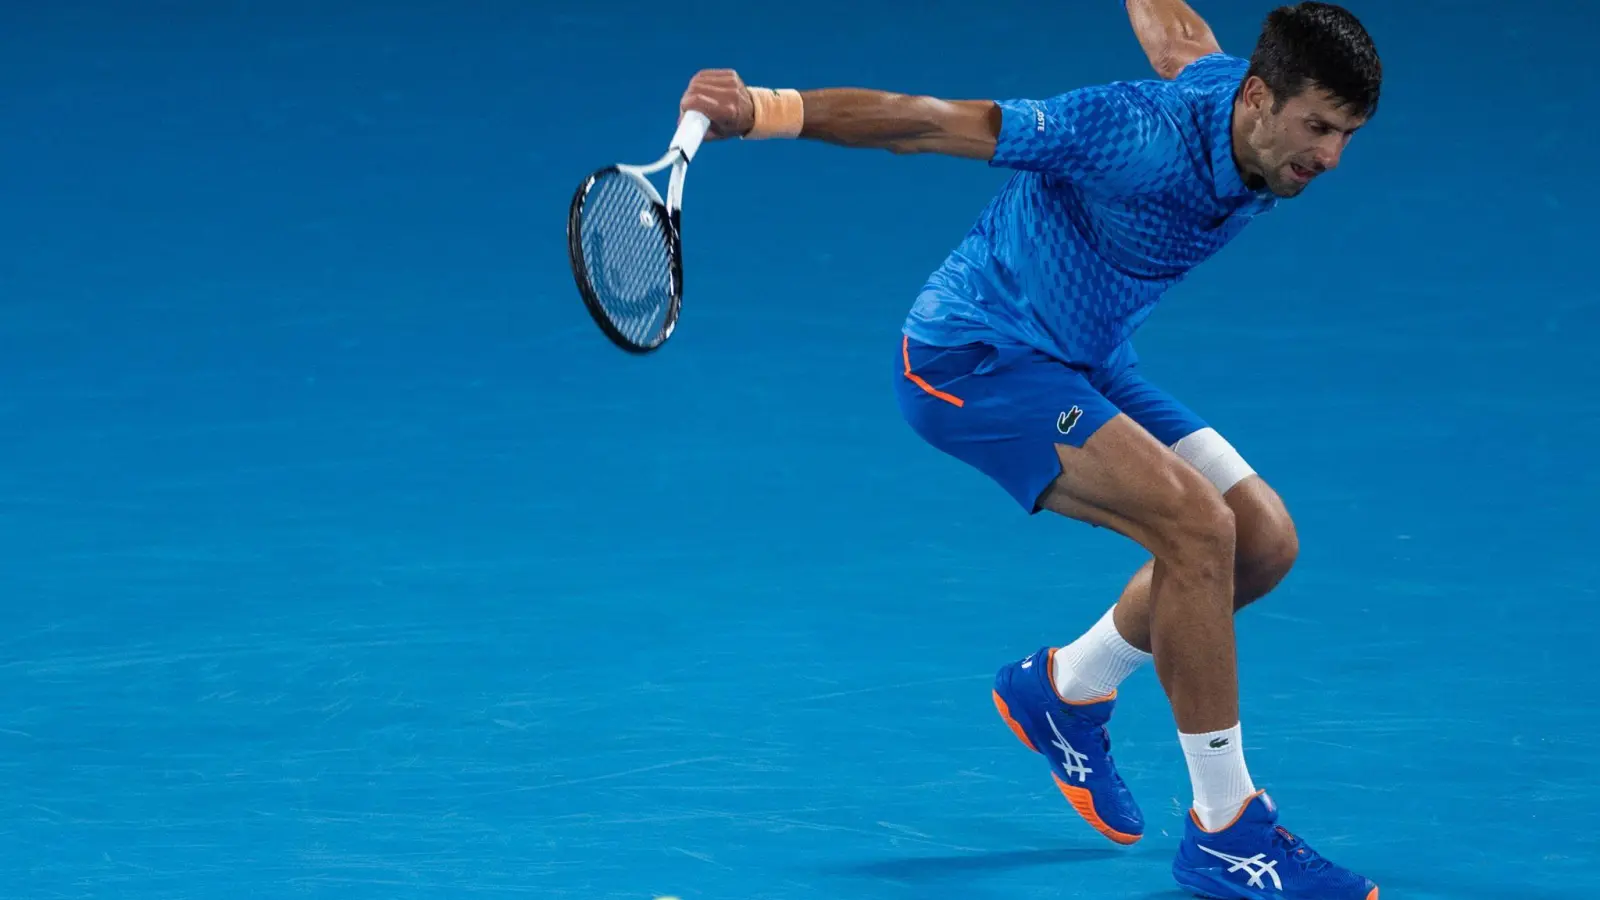 Novak Djokovic spielt bei den Australian Open mit einer Bandage am linken Oberschenkel. (Foto: Uncredited/XinHua/dpa)